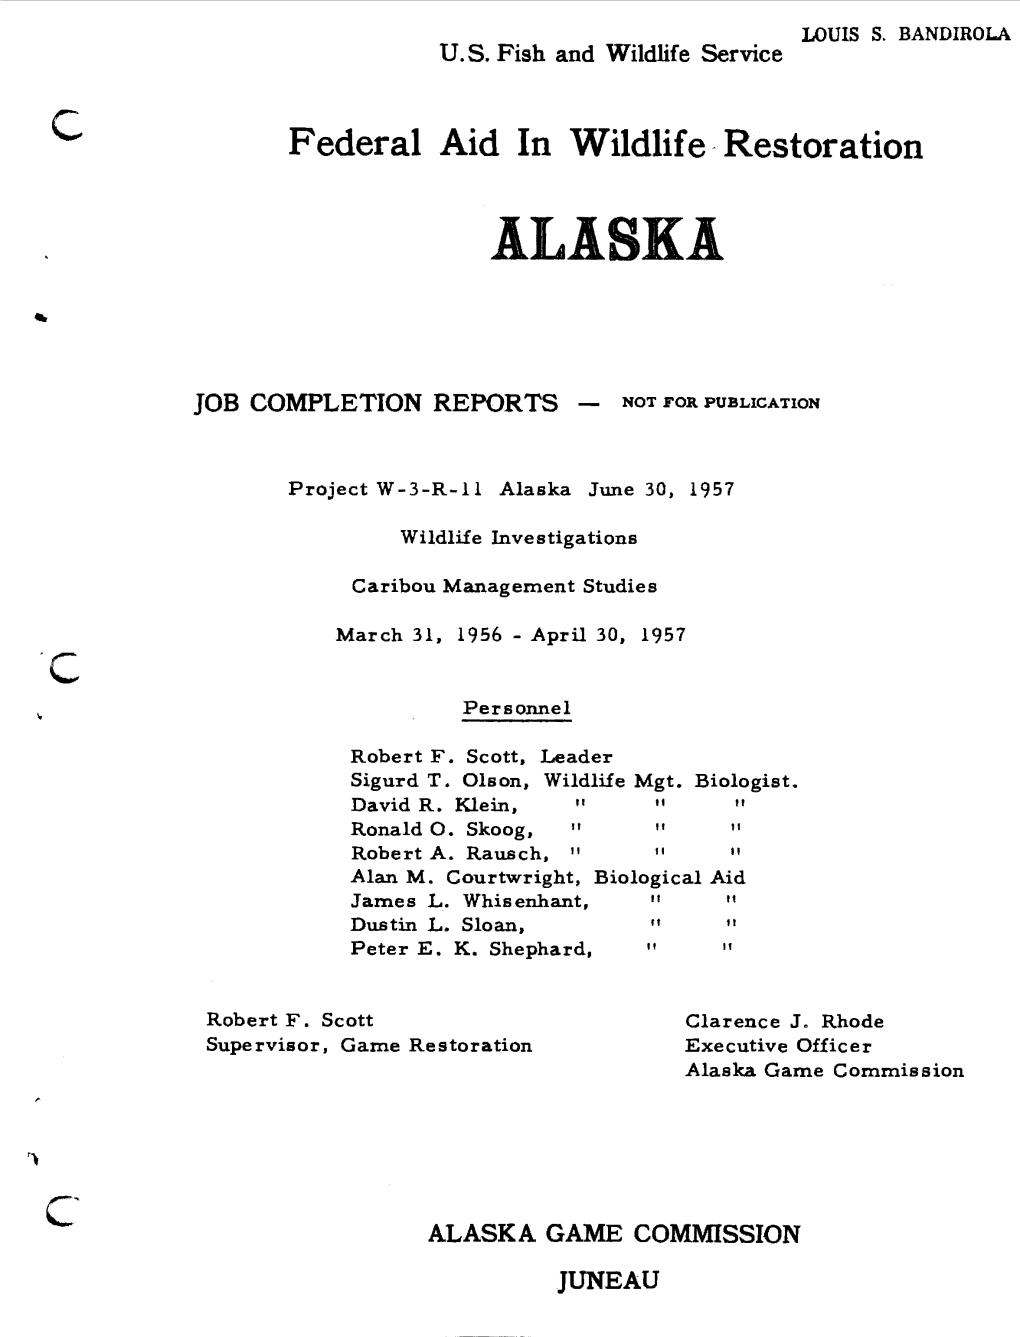 Caribou Management Studies March 31, 1956